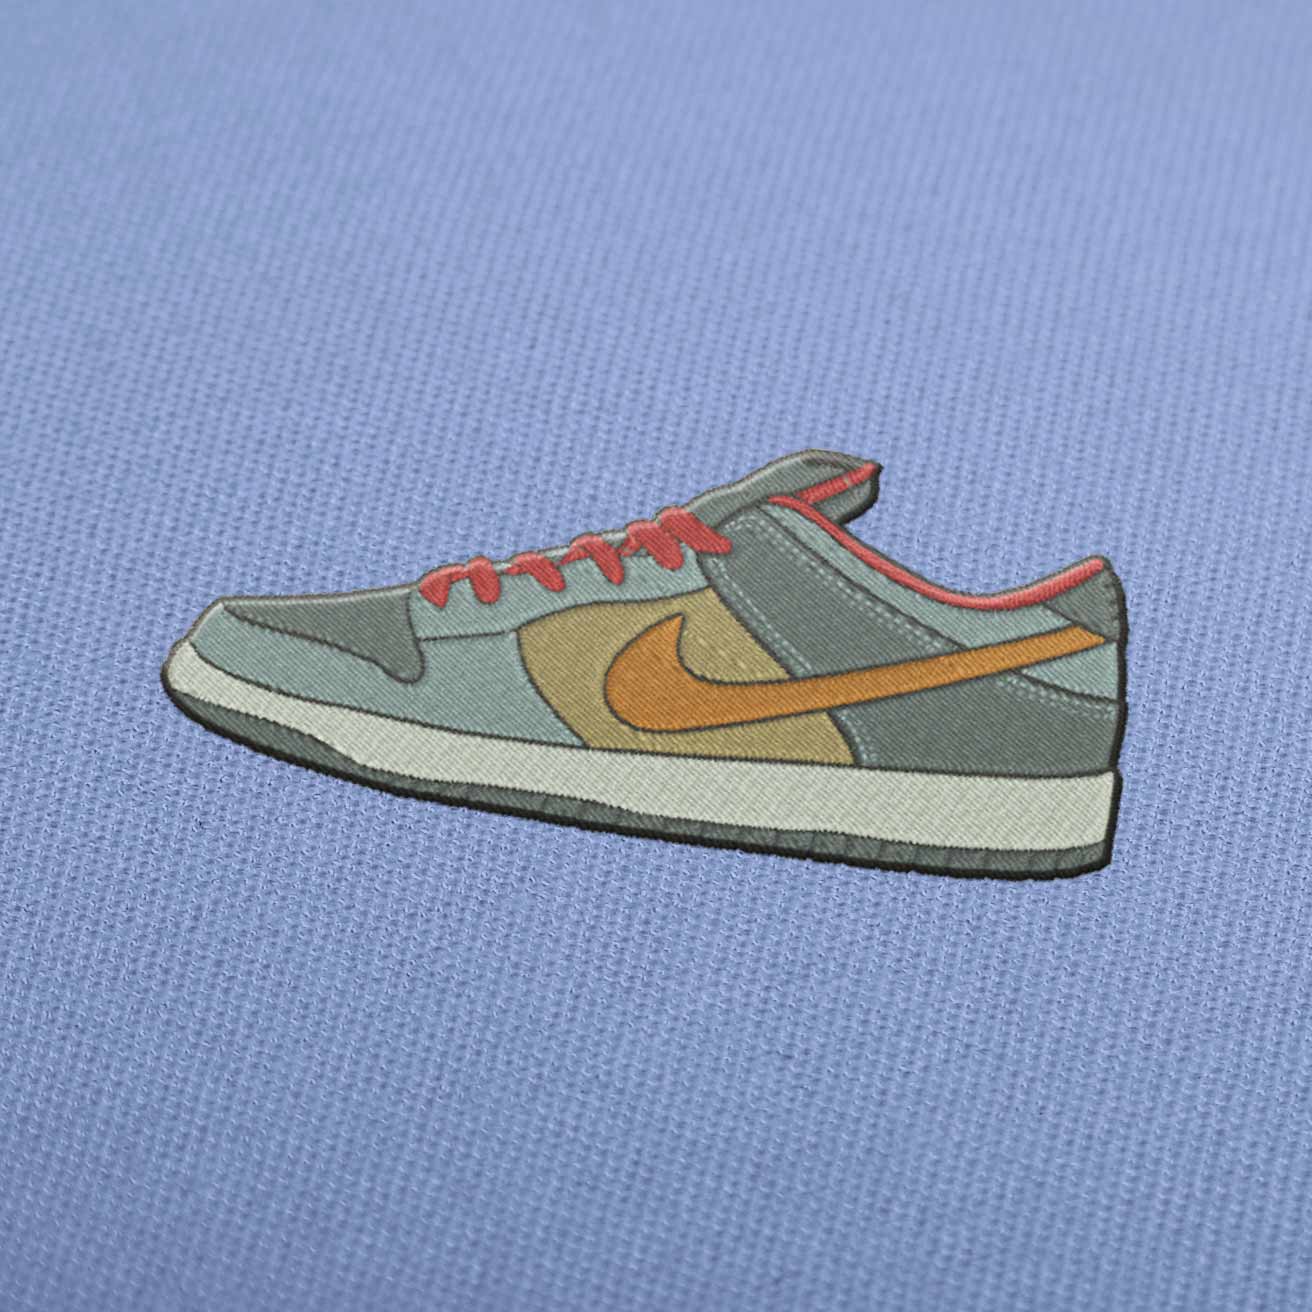 Nike Air Jordan Design - EmbroideryDownload